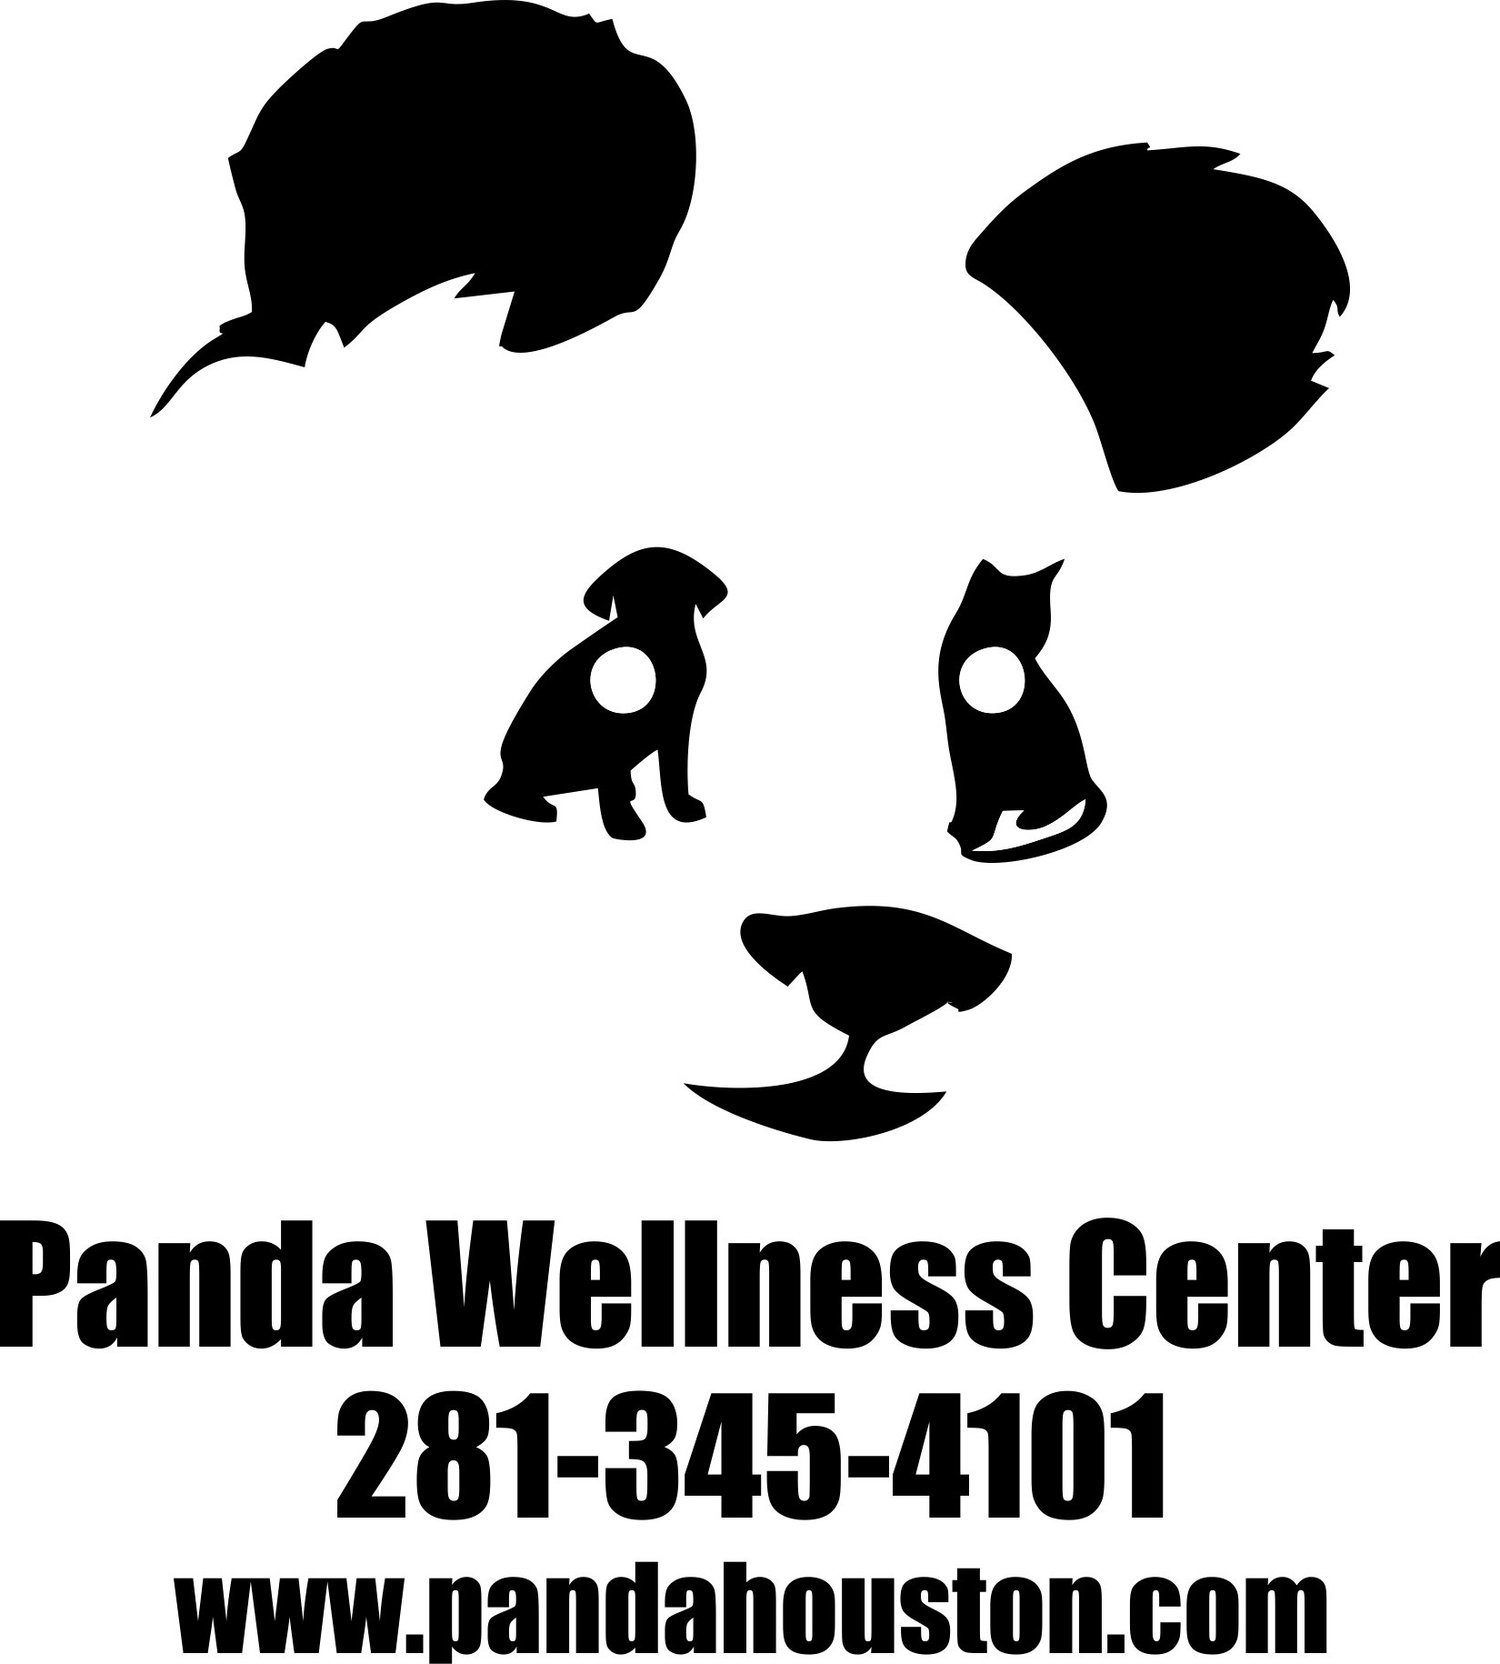 Panda Wellness Center - (281) 345-4101